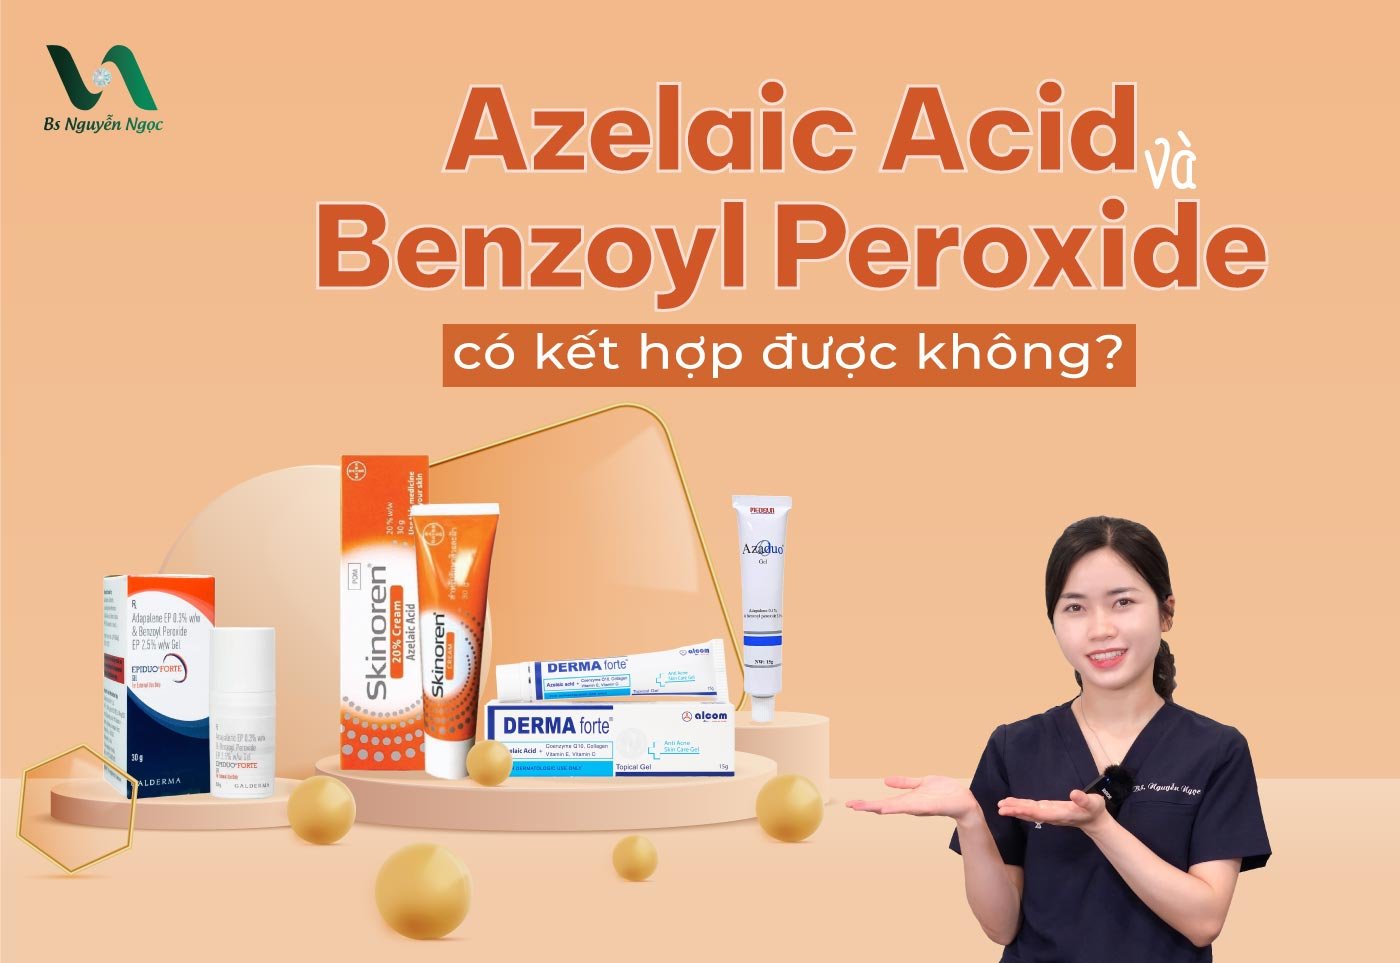 Azelaic Acid và Benzoyl Peroxide có kết hợp được không?